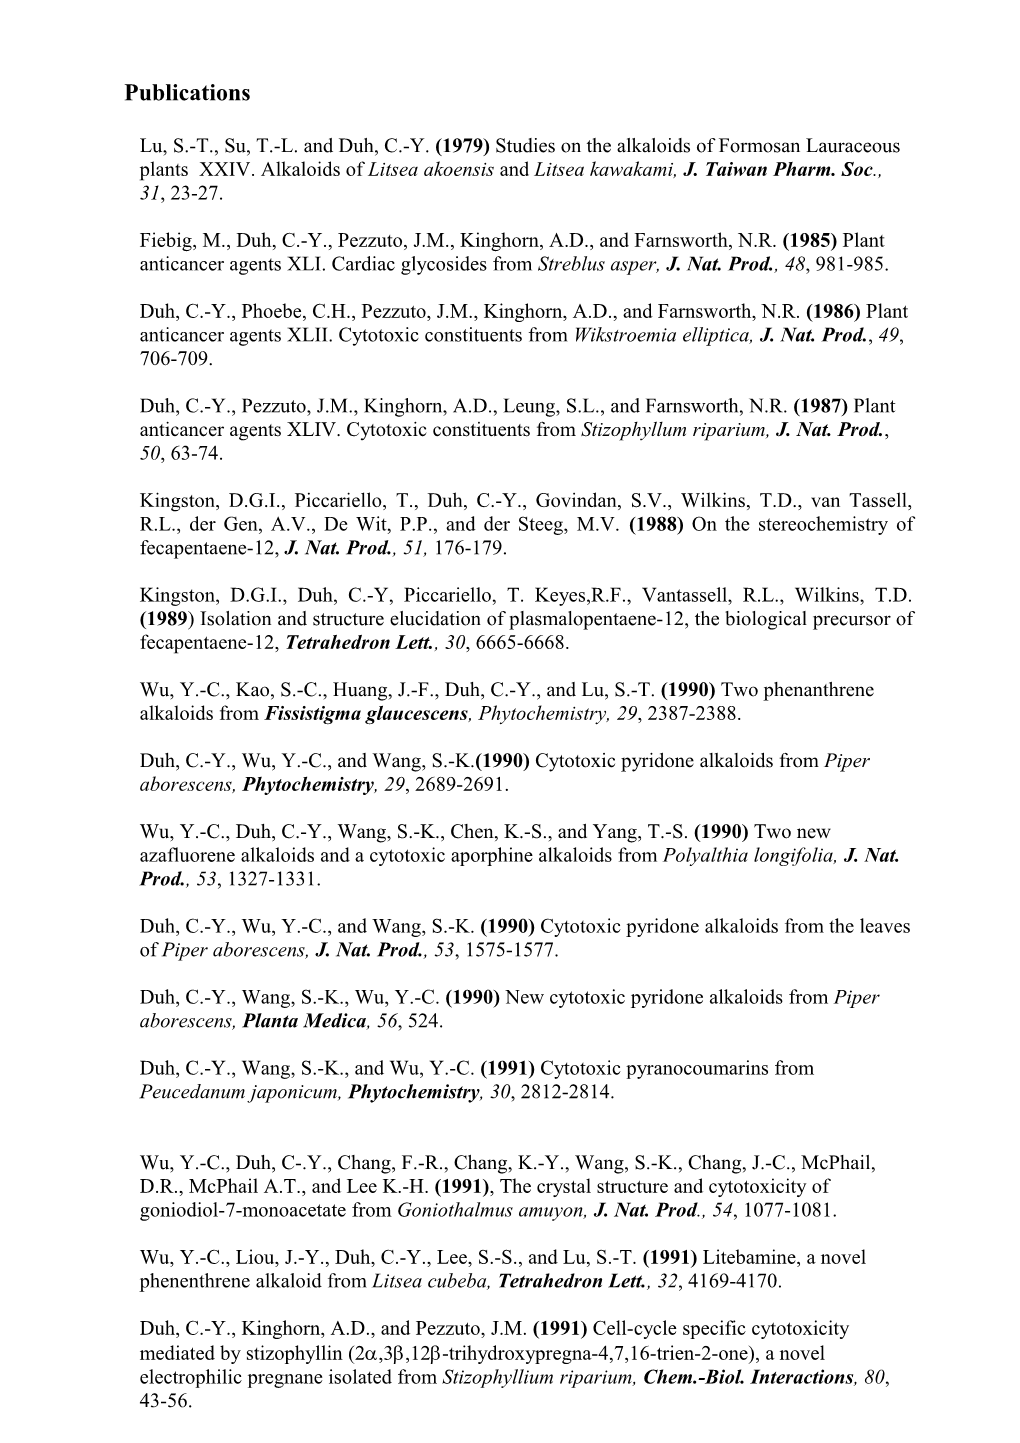 Lu, S.-T., Su, T.-L. and Duh, C.-Y. (1979) Studies on the Alkaloids of Formosan Lauraceous